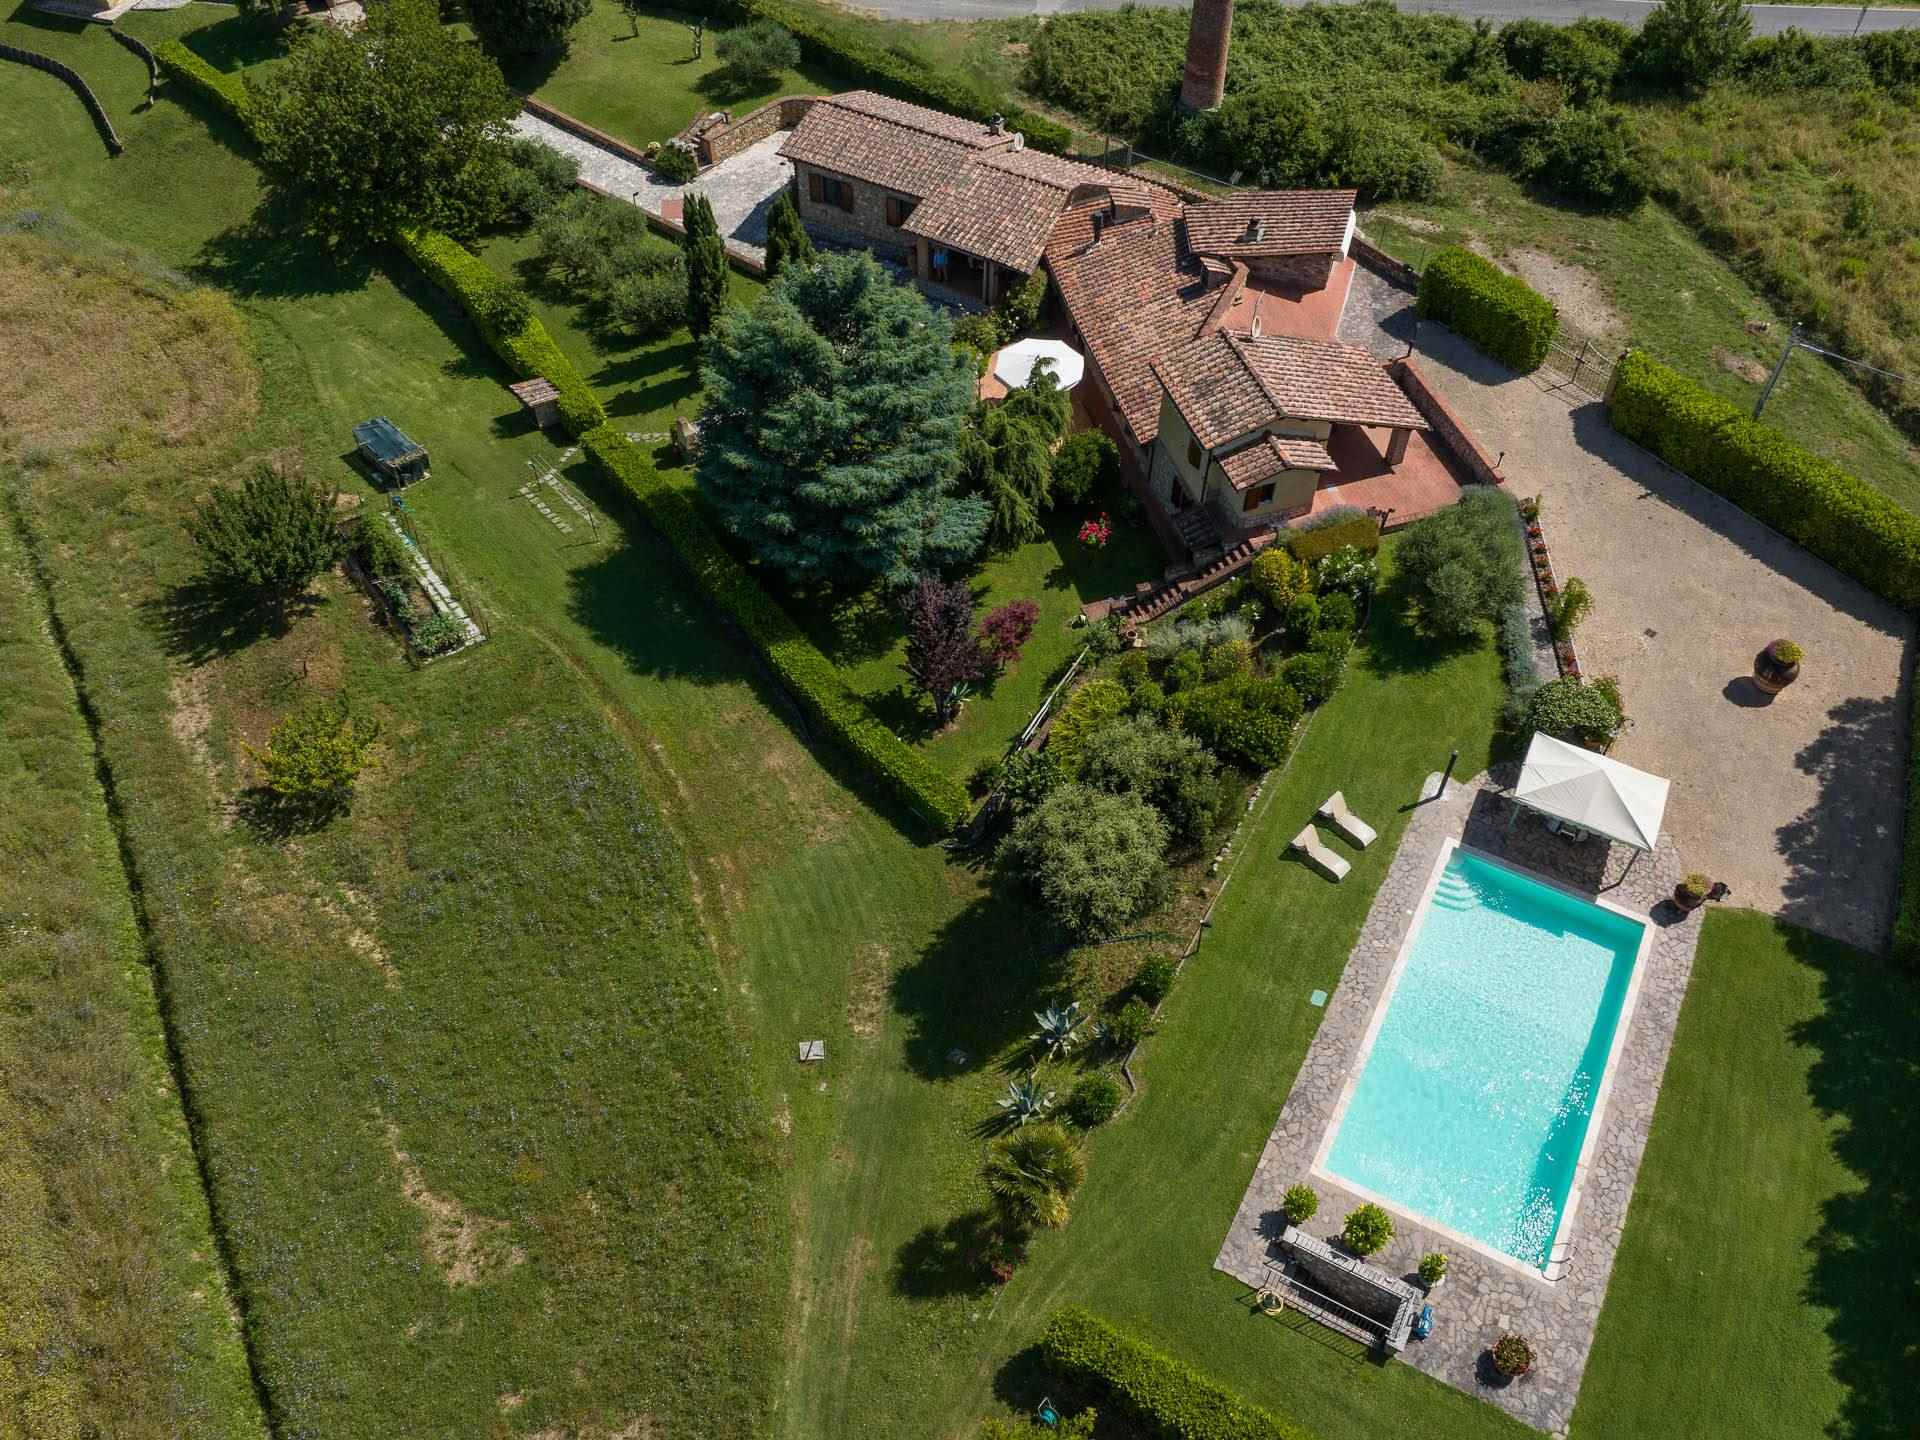 Villa con piscina, giardino e terreno di un ettaro con due laghi in ottima posizione nel comune di Casole d'Elsa a 300 m slm, recuperata dai resti di 